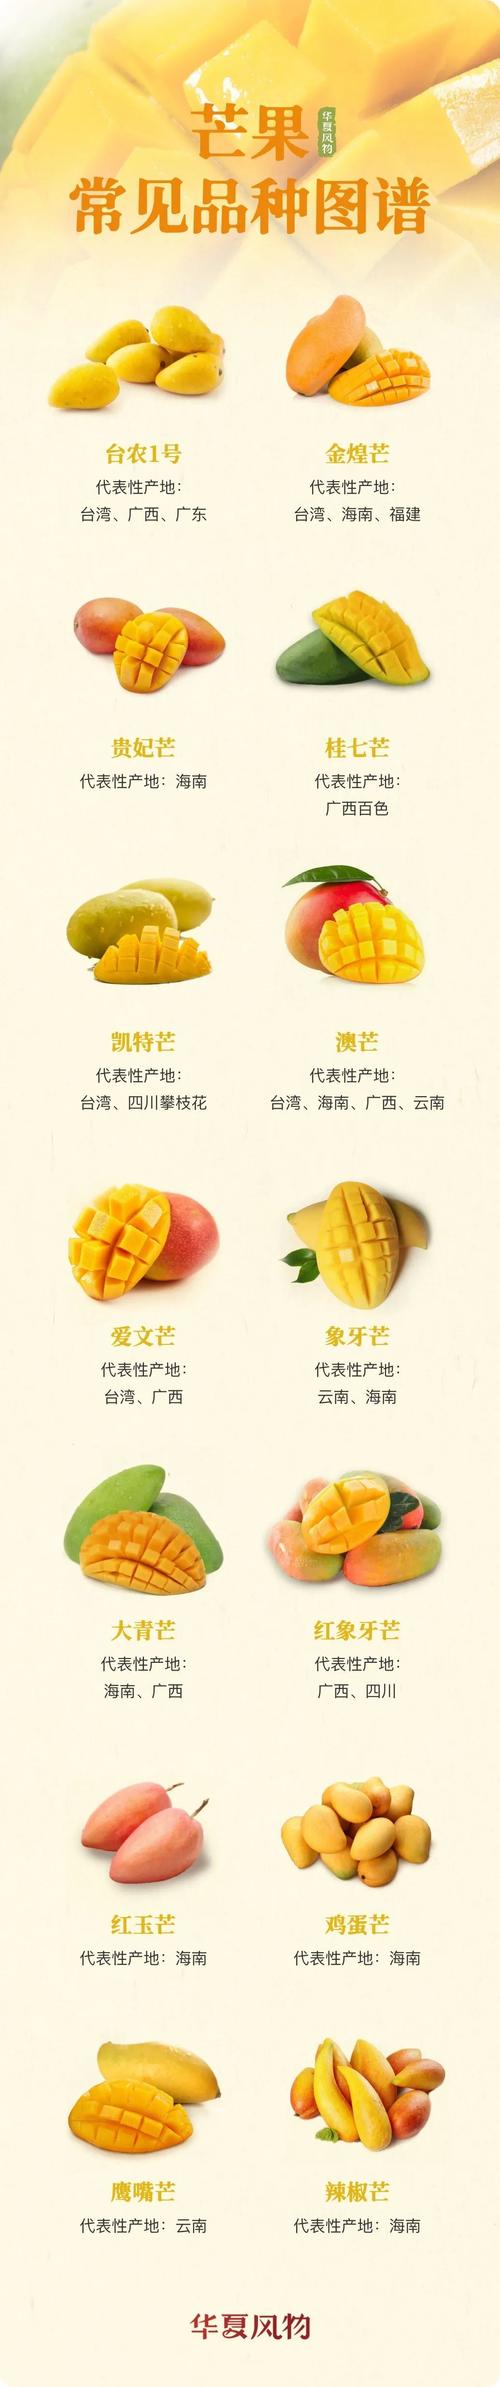 芒果常见品种图鉴 08华夏风物